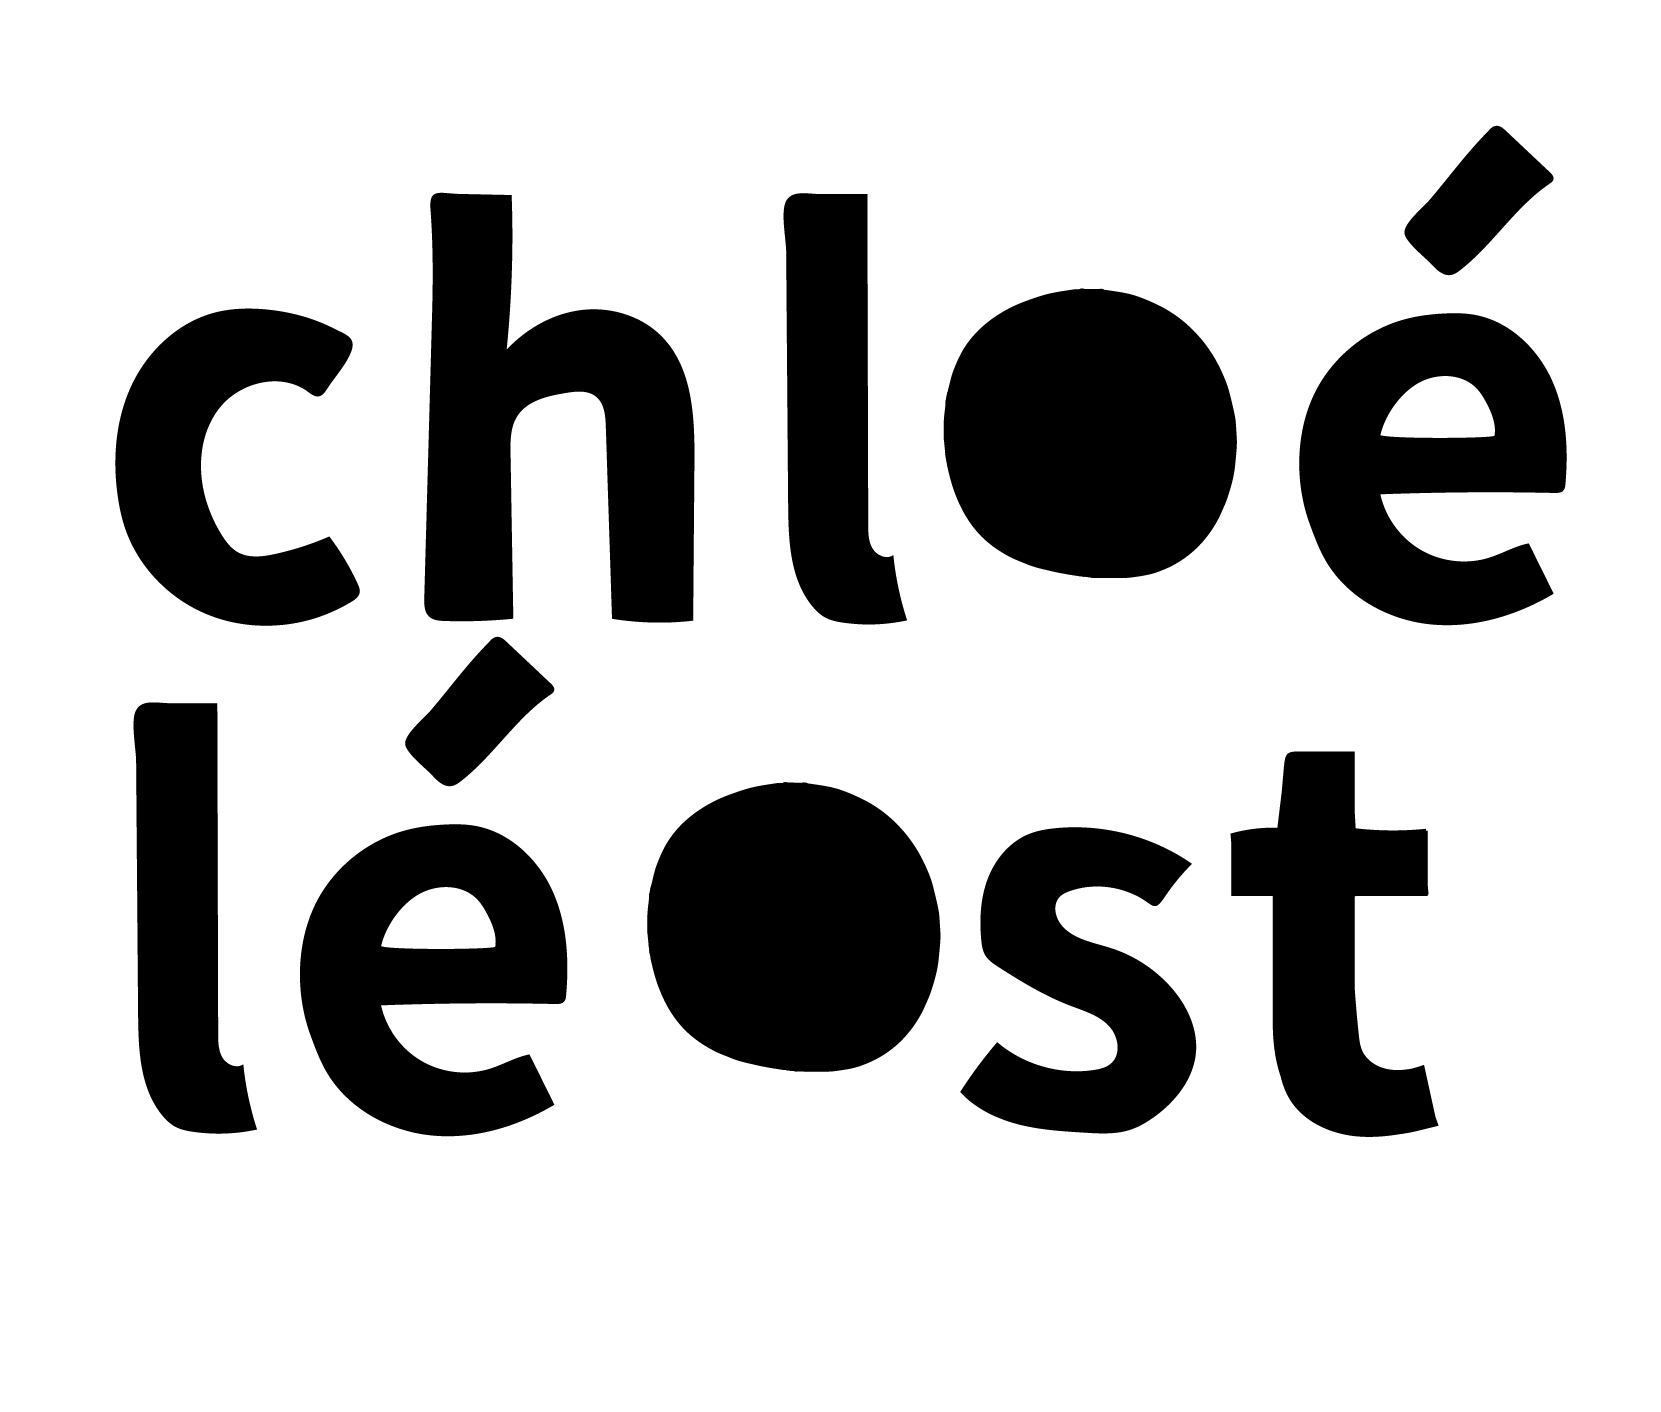 Chloé Léost